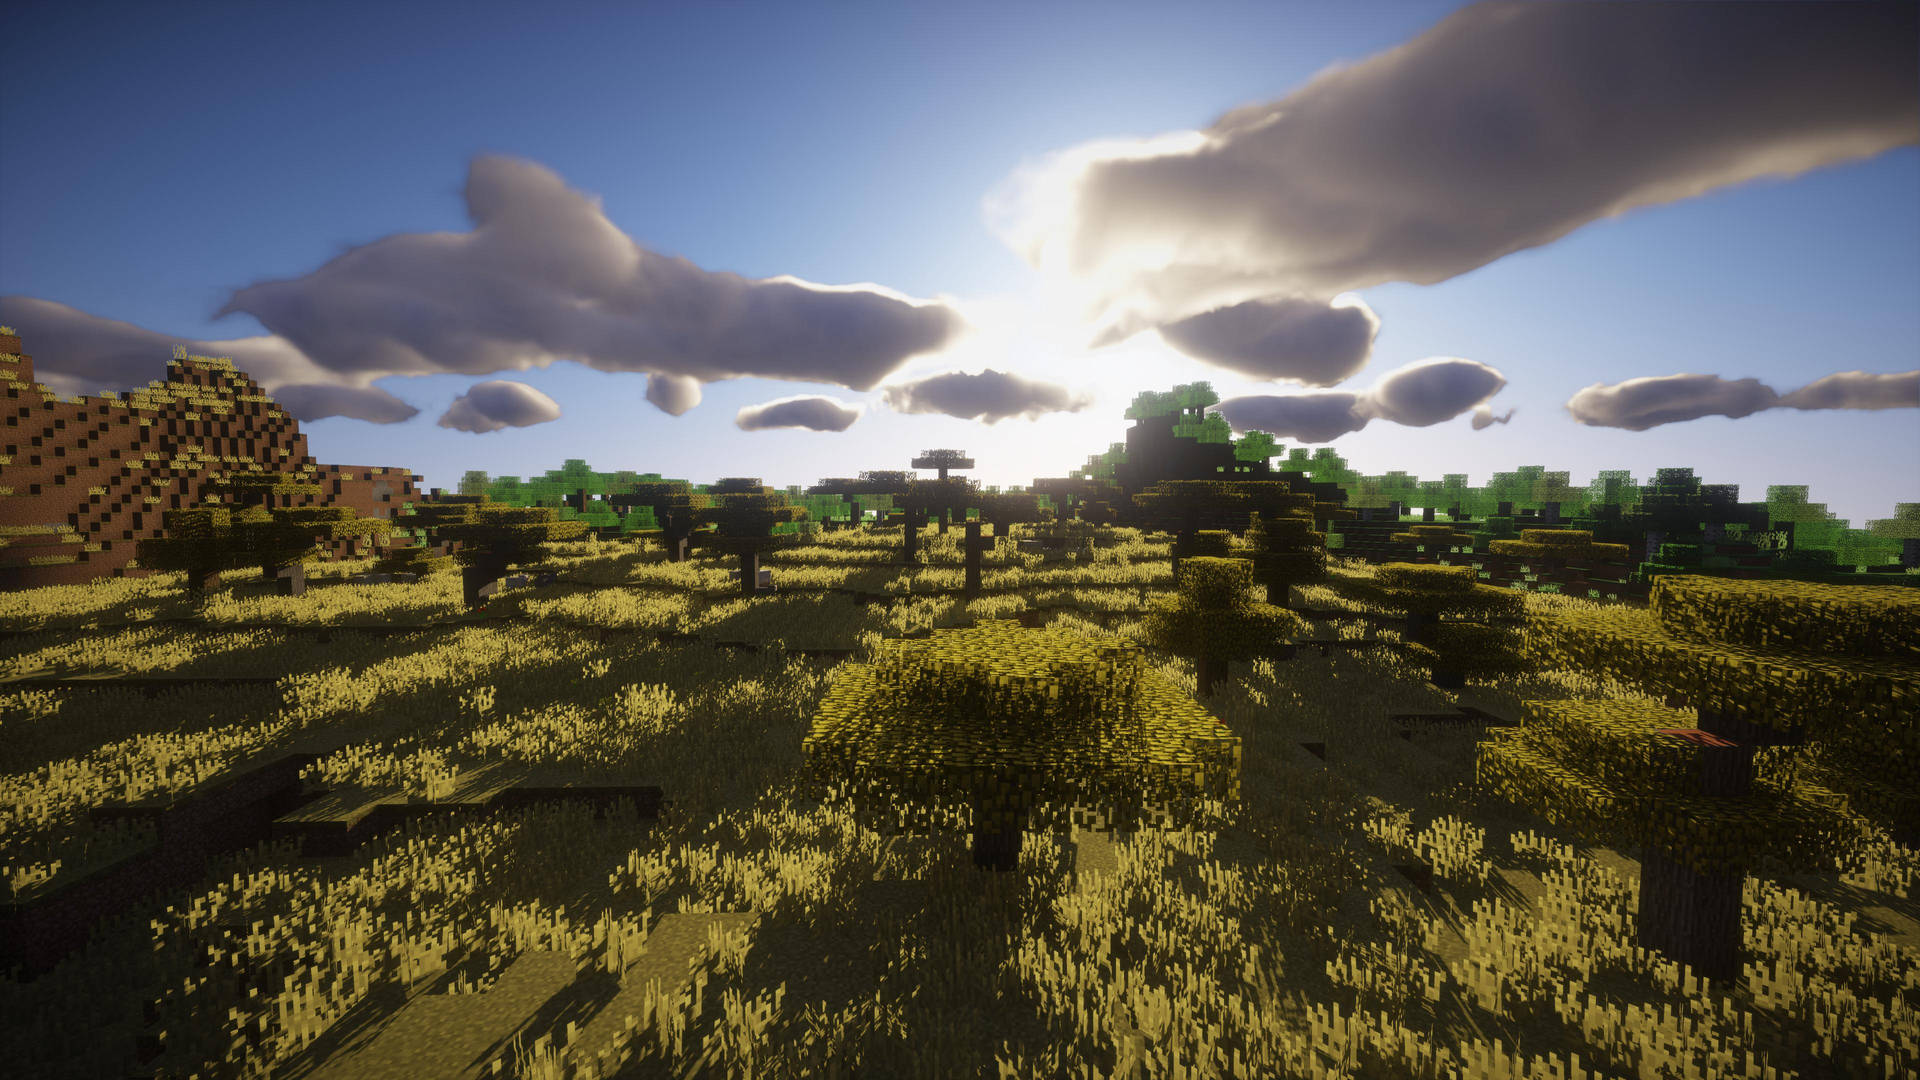 4k Minecraft Plethora Of Trees Wallpaper